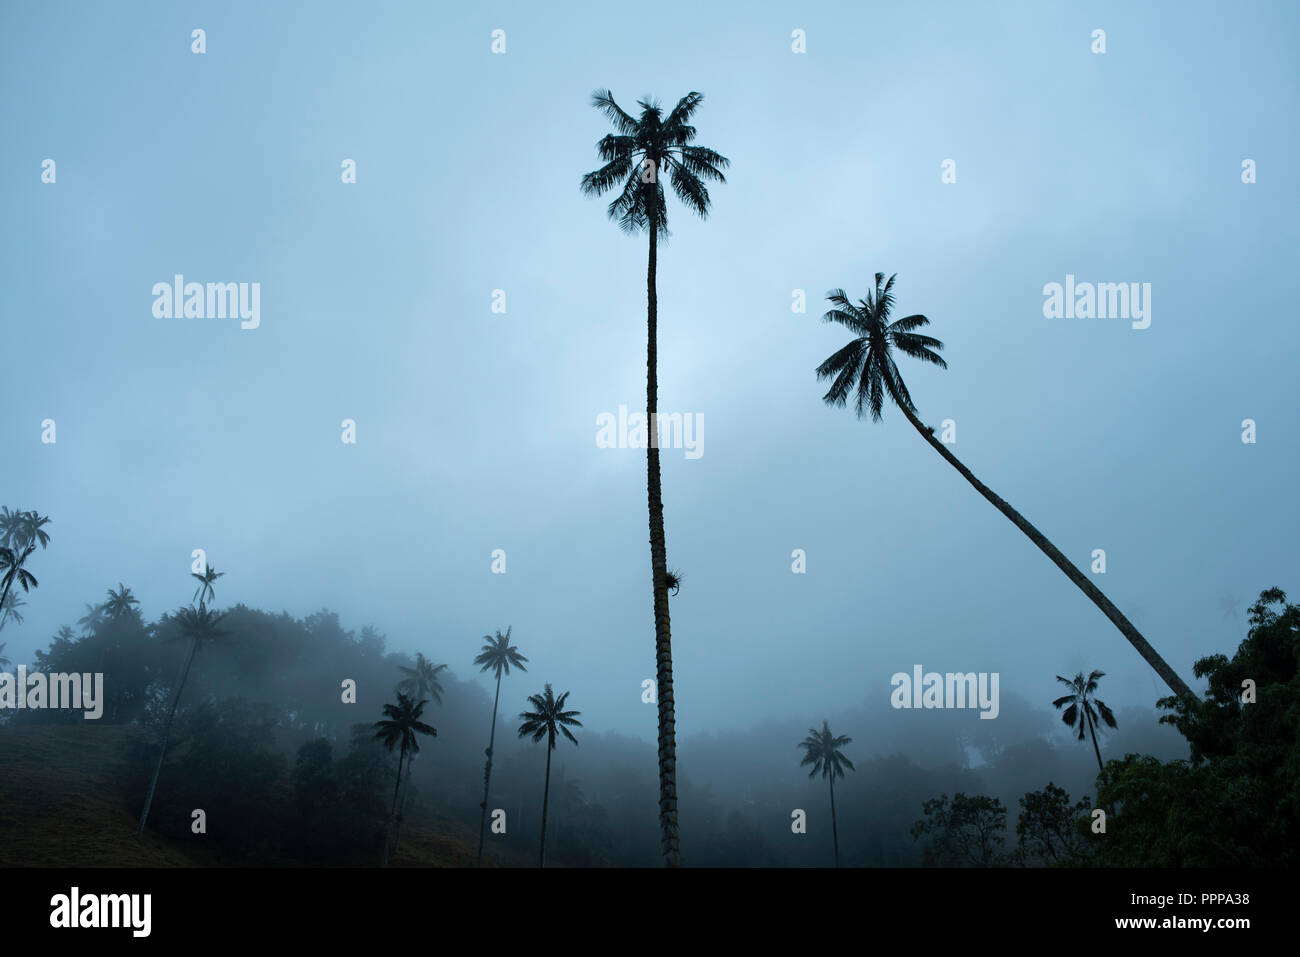 Le surréel, ciel voilé, paysage de la vallée de Cocora (Valle de cocora) pendant le crépuscule, avec des collines et palmiers. cire Quindío Près de Salento, en Colombie. Sep 2018 Banque D'Images